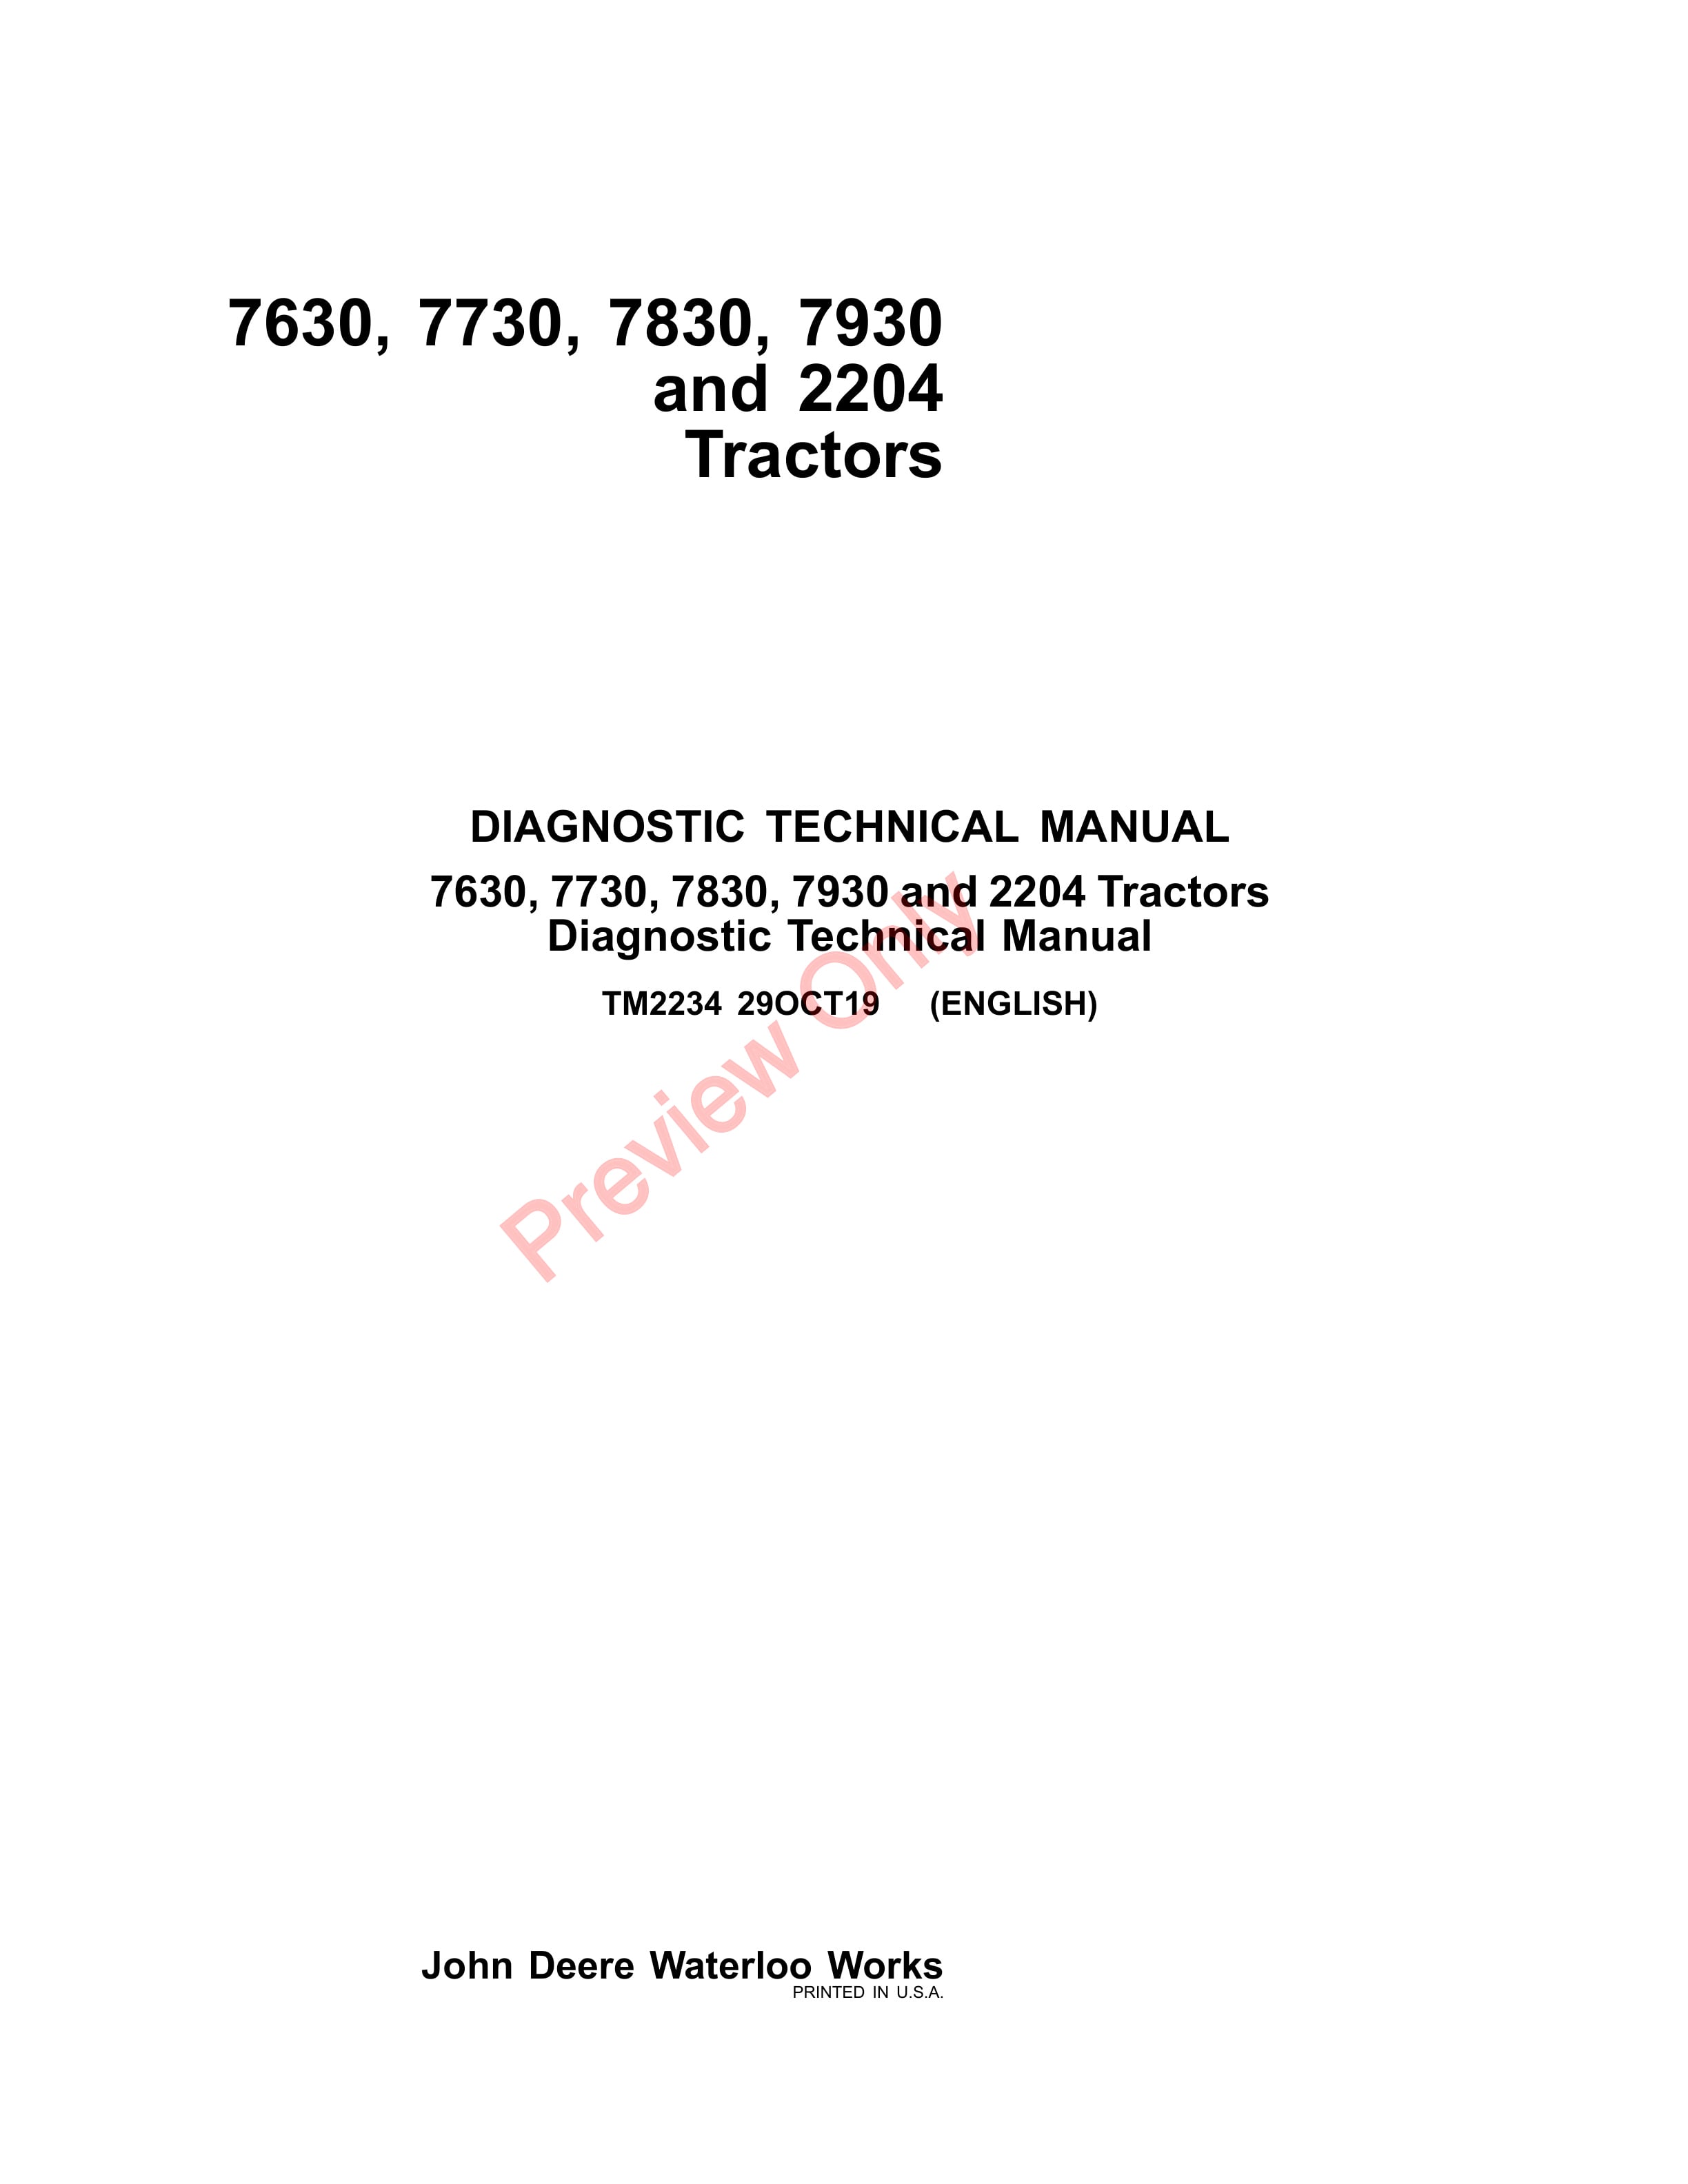 John Deere 7630, 7730, 7830, 7930 and 2204 Tractors Diagnostic Technical Manual TM2234 29OCT19-1